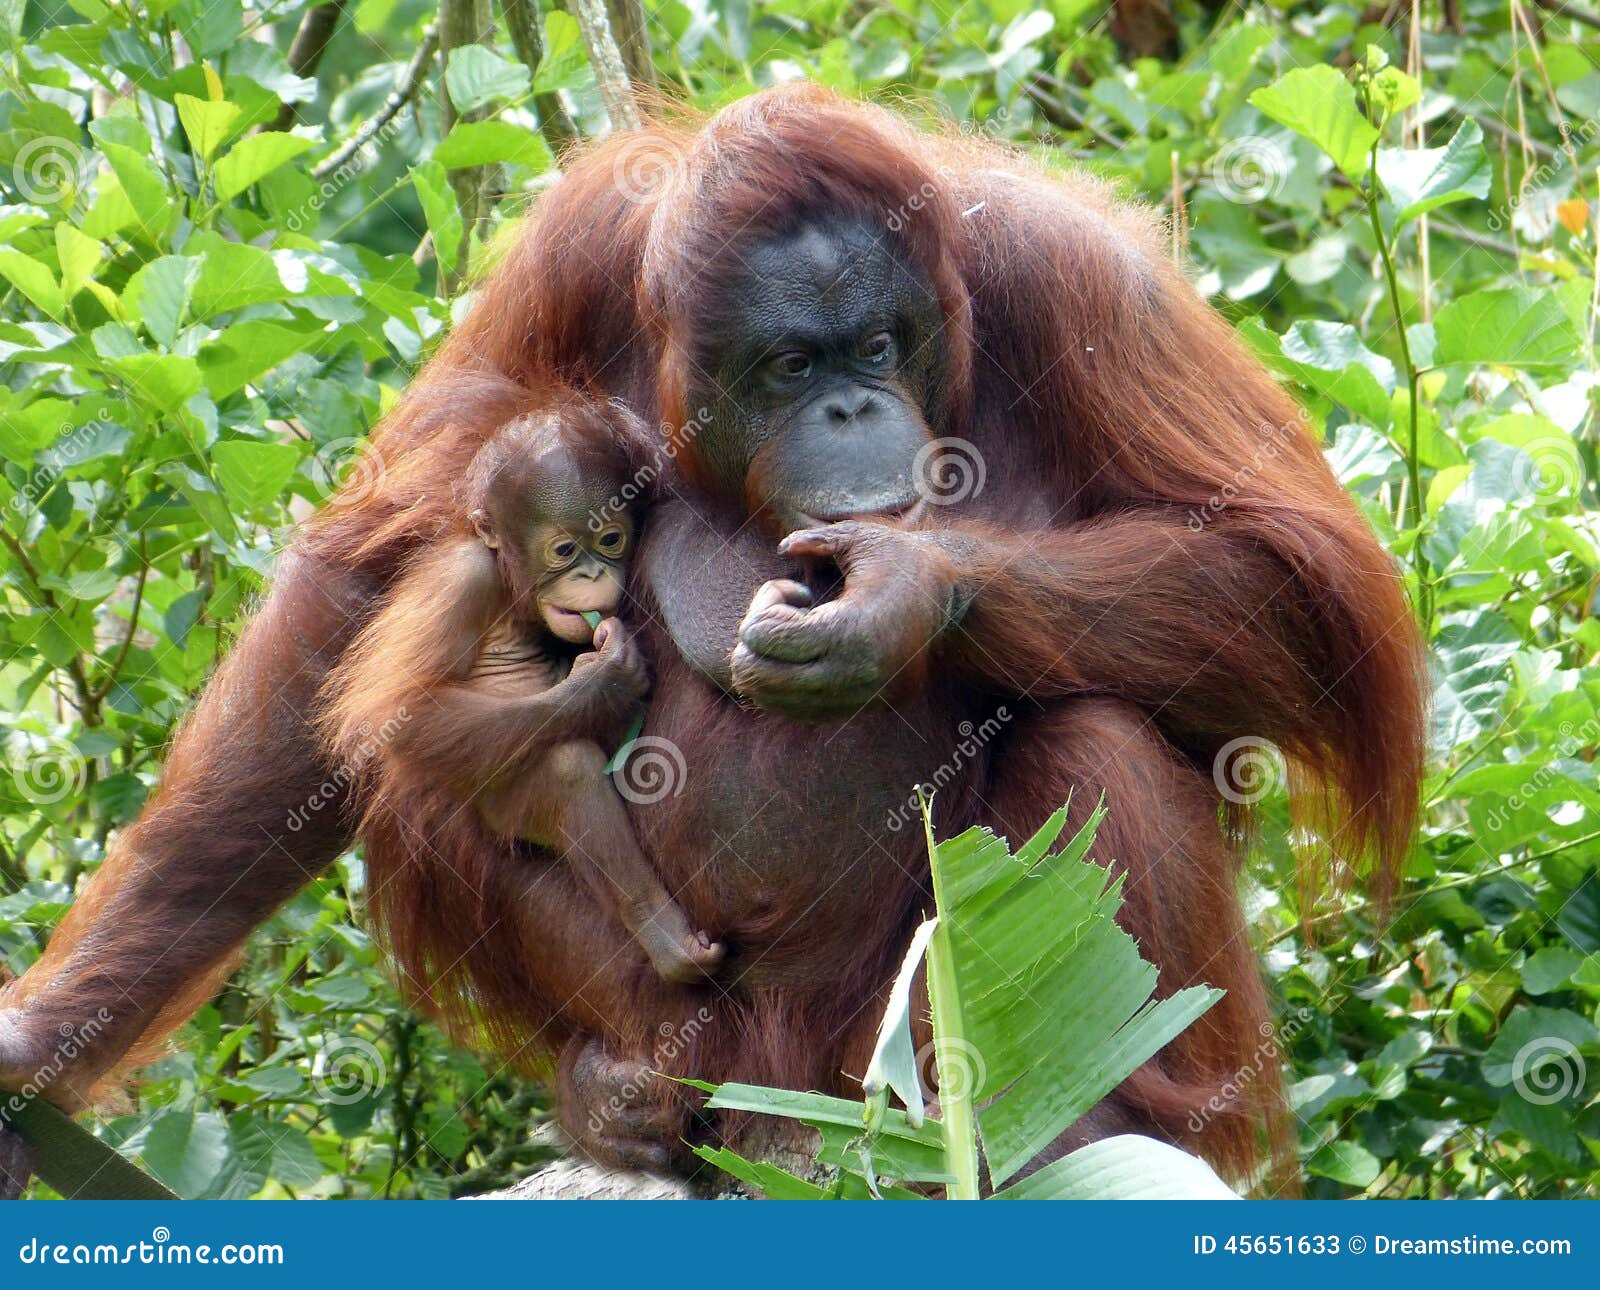 orangutan mother & baby